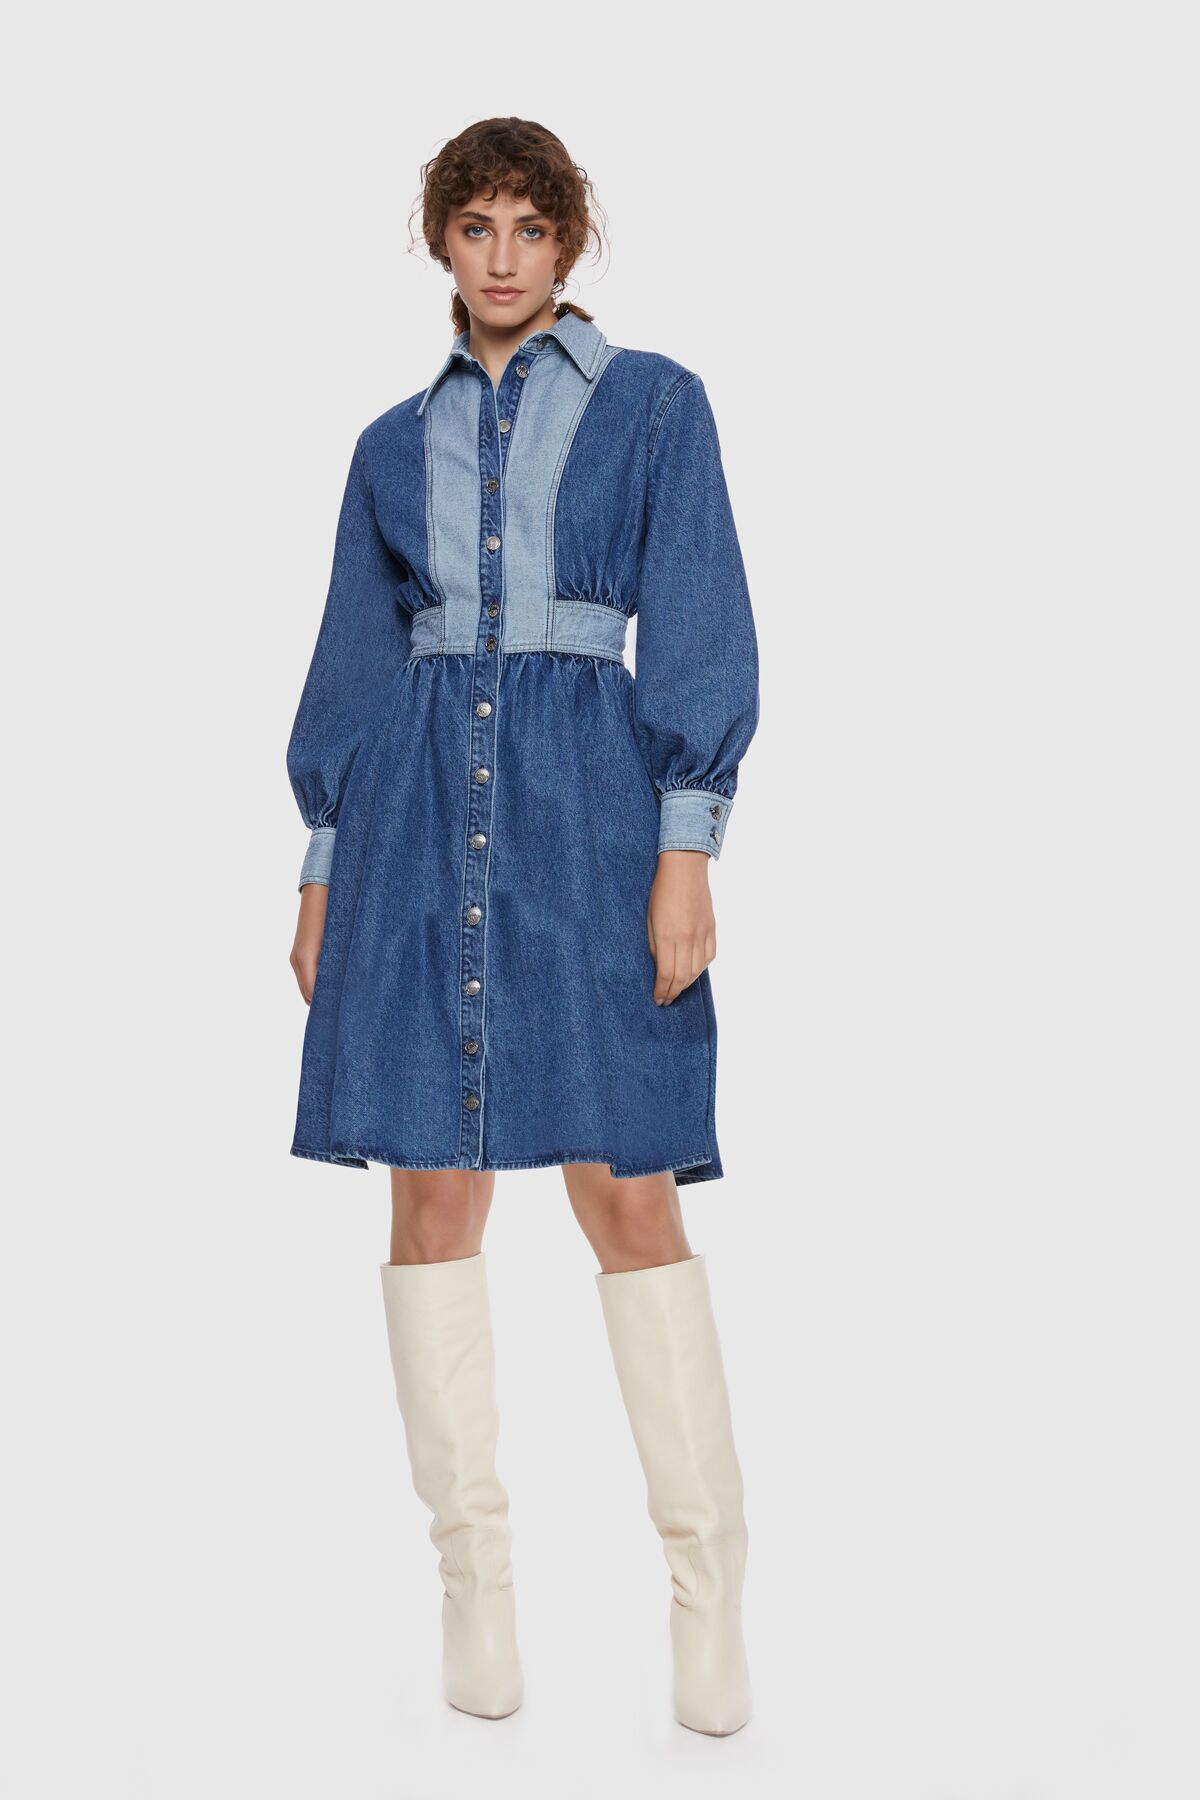 KIWE - Önü Düğmeli Koyu Lacivert Yıkamalı Tasarım Kot Elbise